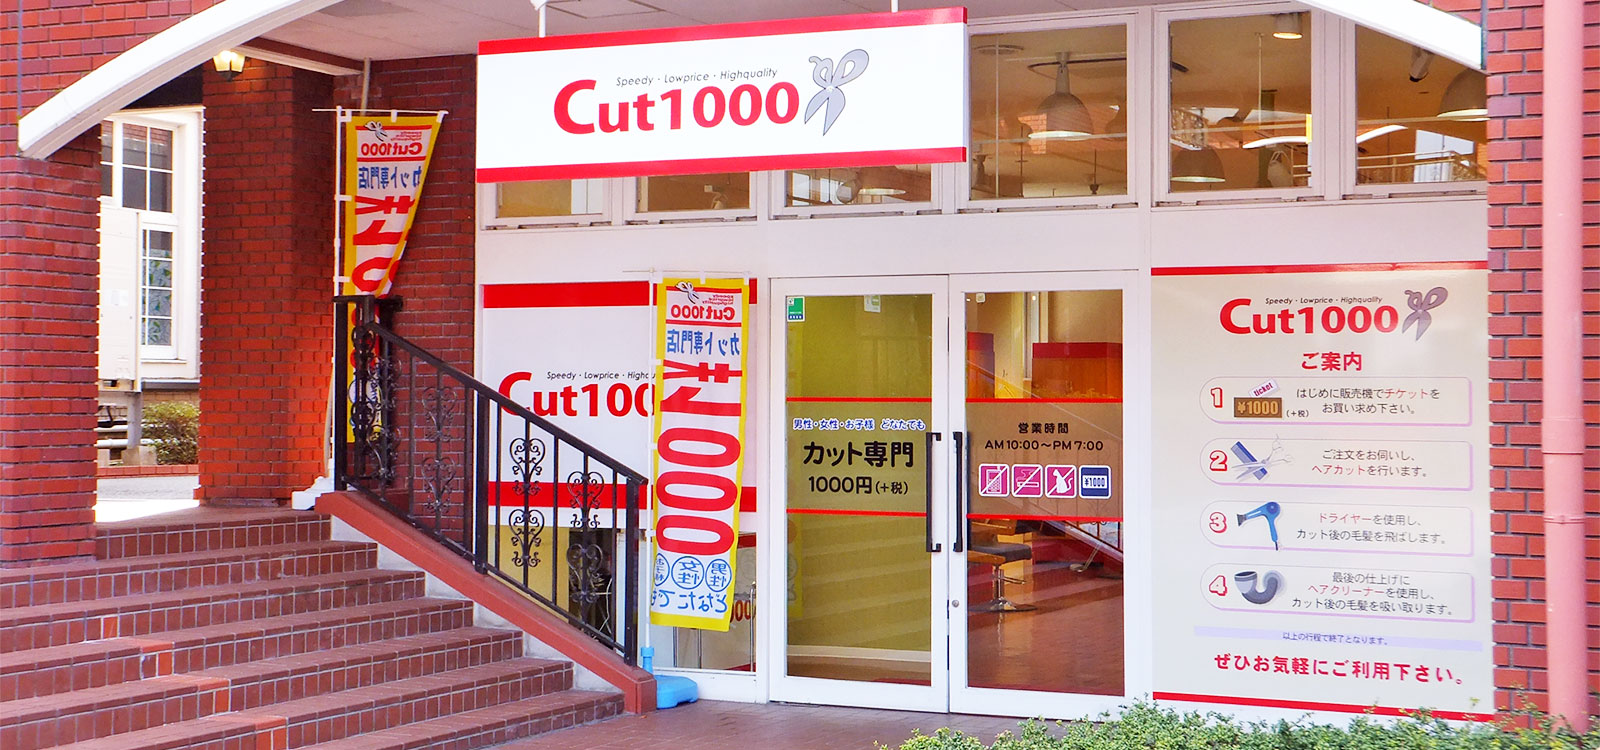 1000円カット専門店 Cut1000